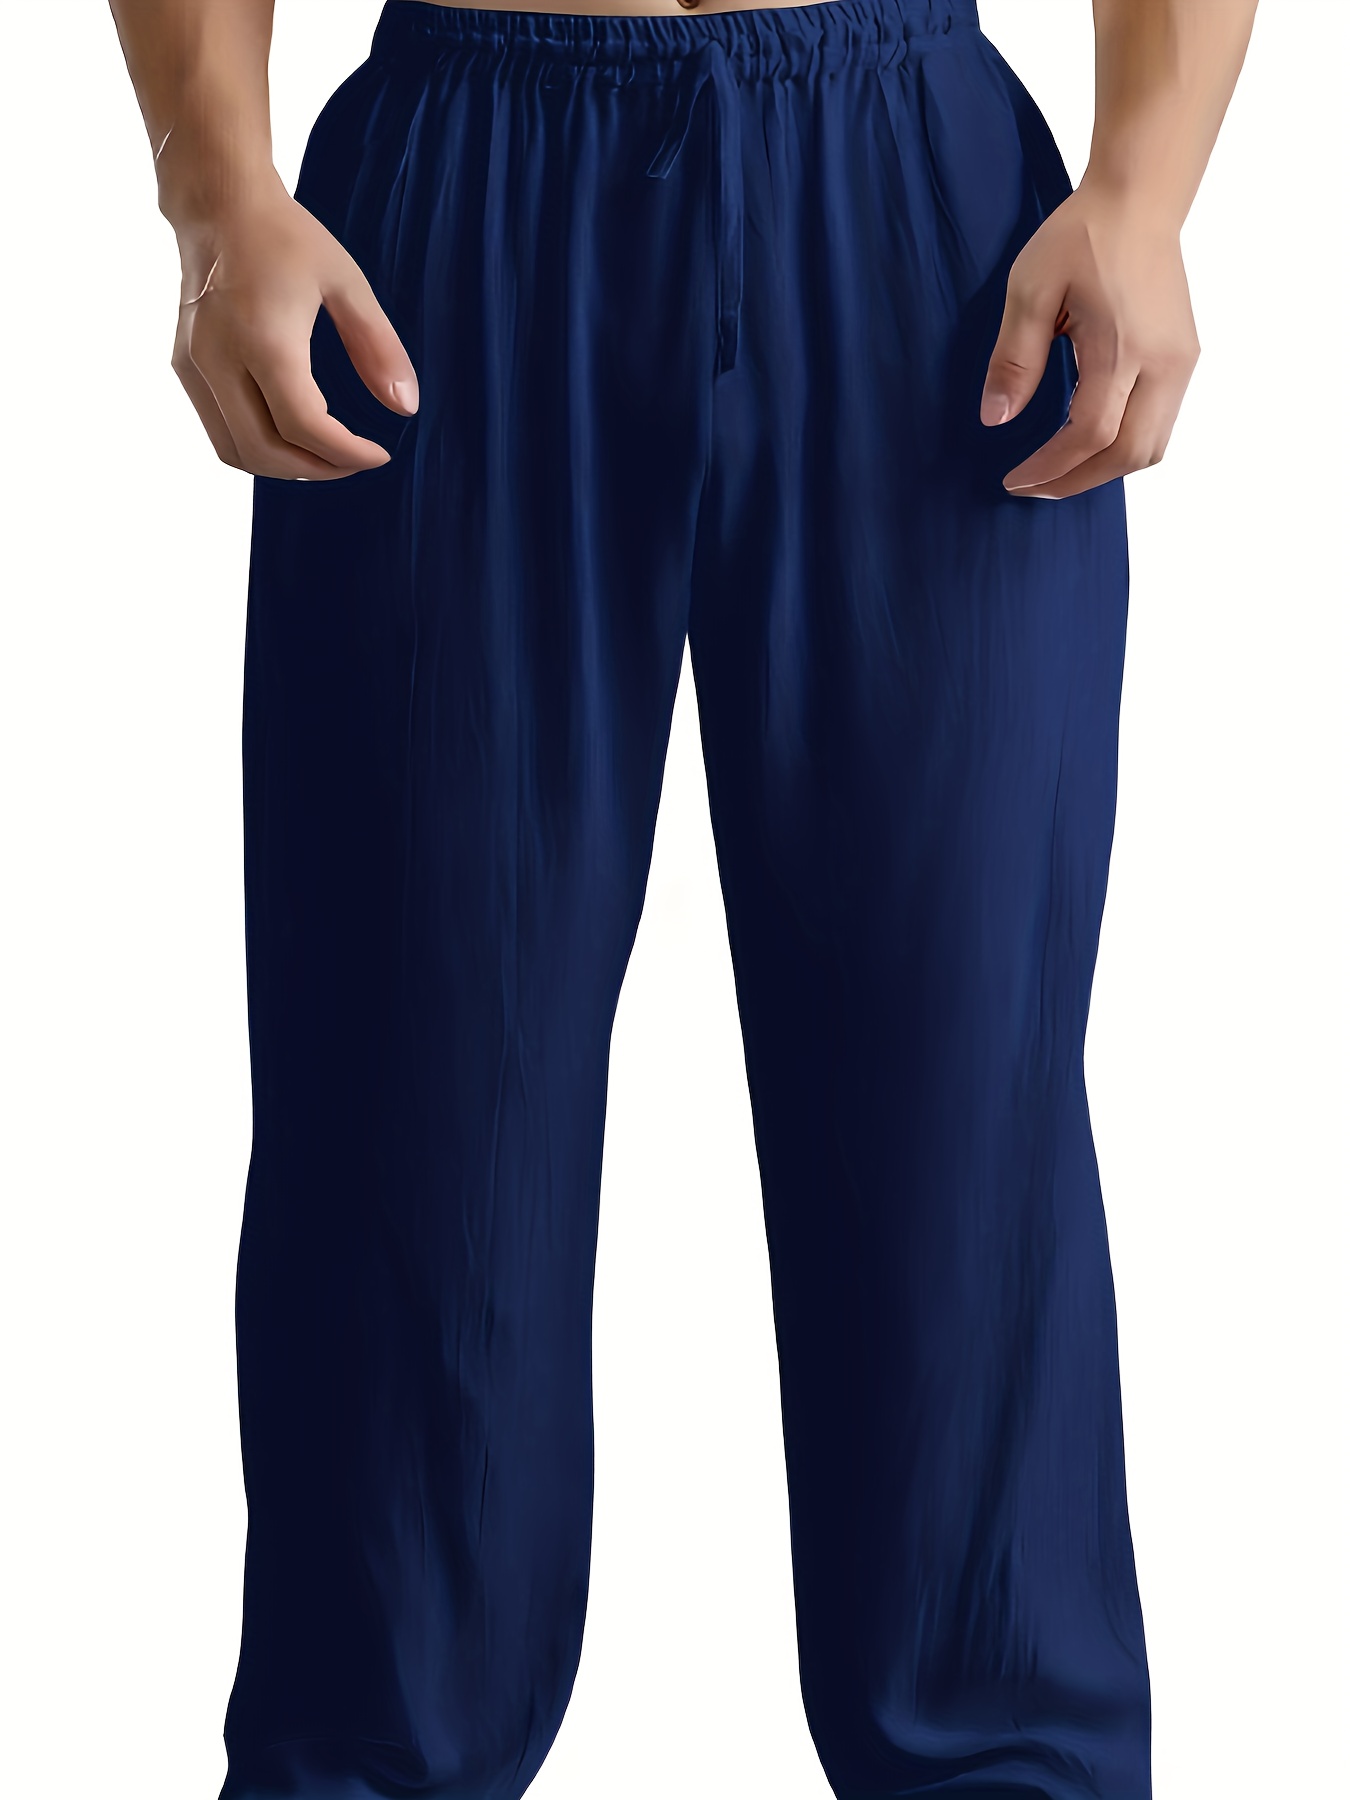 Men's Dark Blue Baggy Cotton Pants